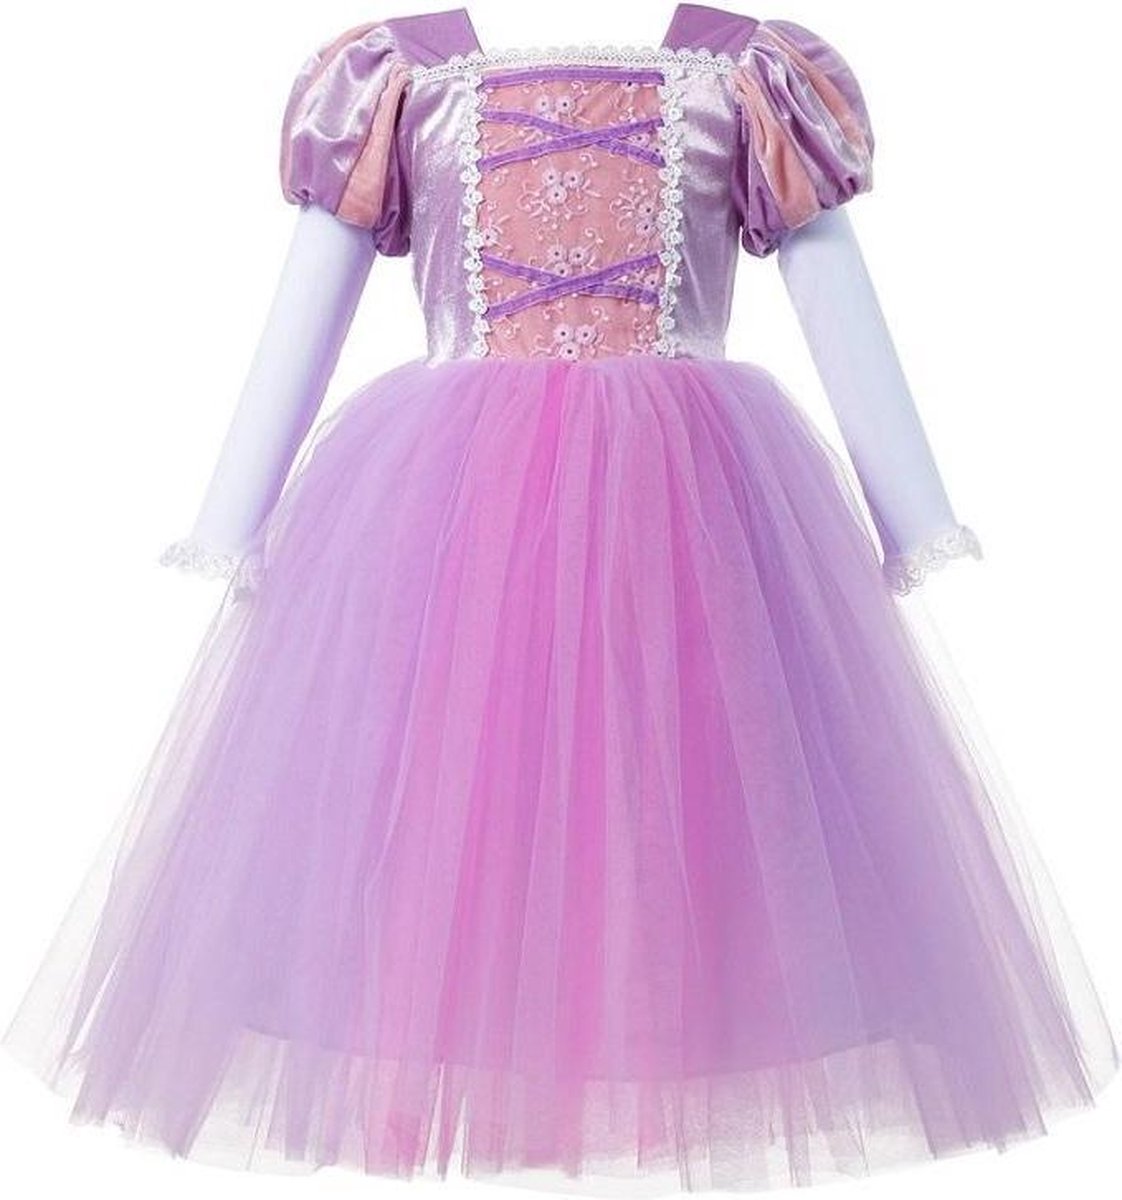 Prinses - Luxe prinses Rapunzel jurk - Prinsessenjurk - Verkleedkleding - Maat 134/140 (140) 8/9 jaar